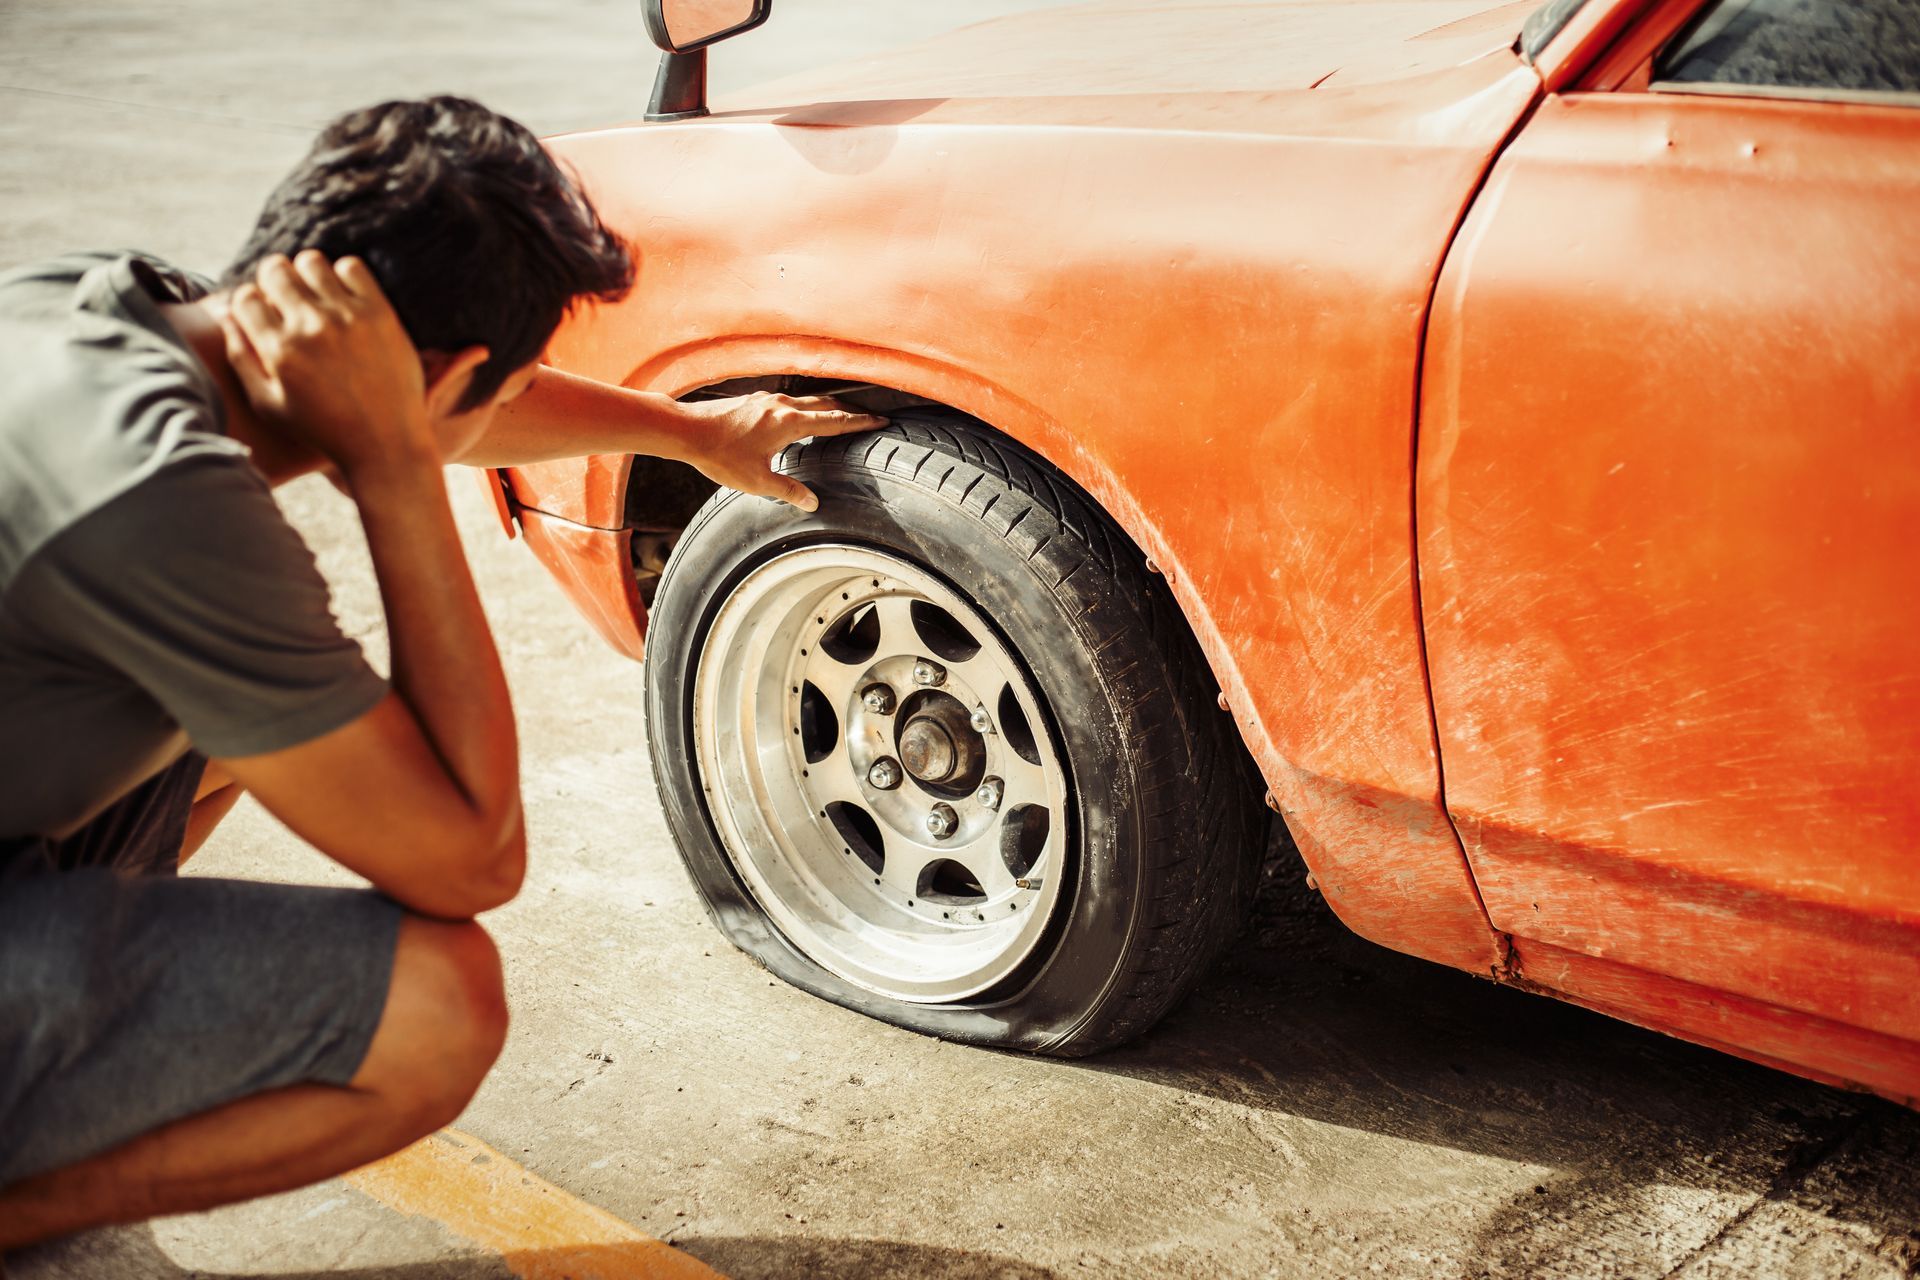 Un homme dépité regarde le pneu crevé de sa voiture orange